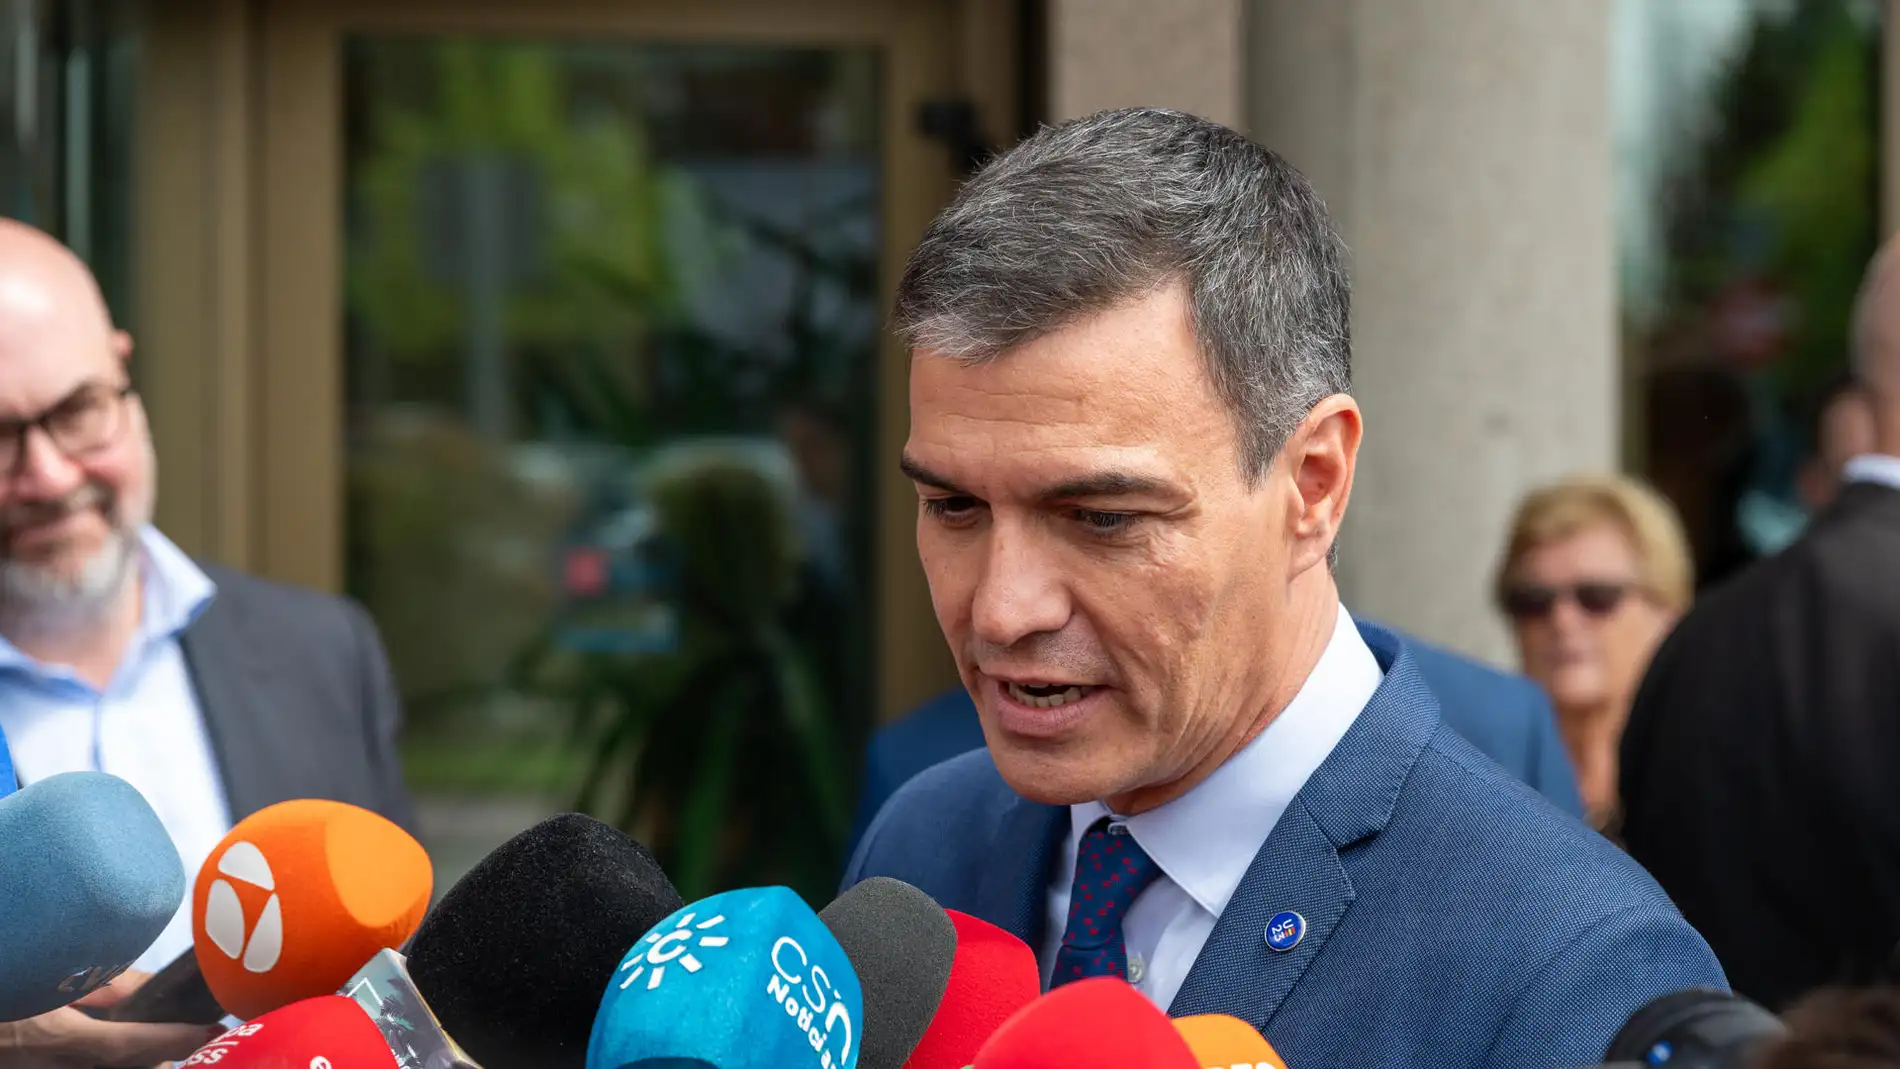 El TC rechaza por unanimidad la petición del PSOE para revisar los votos nulos en Madrid de las generales